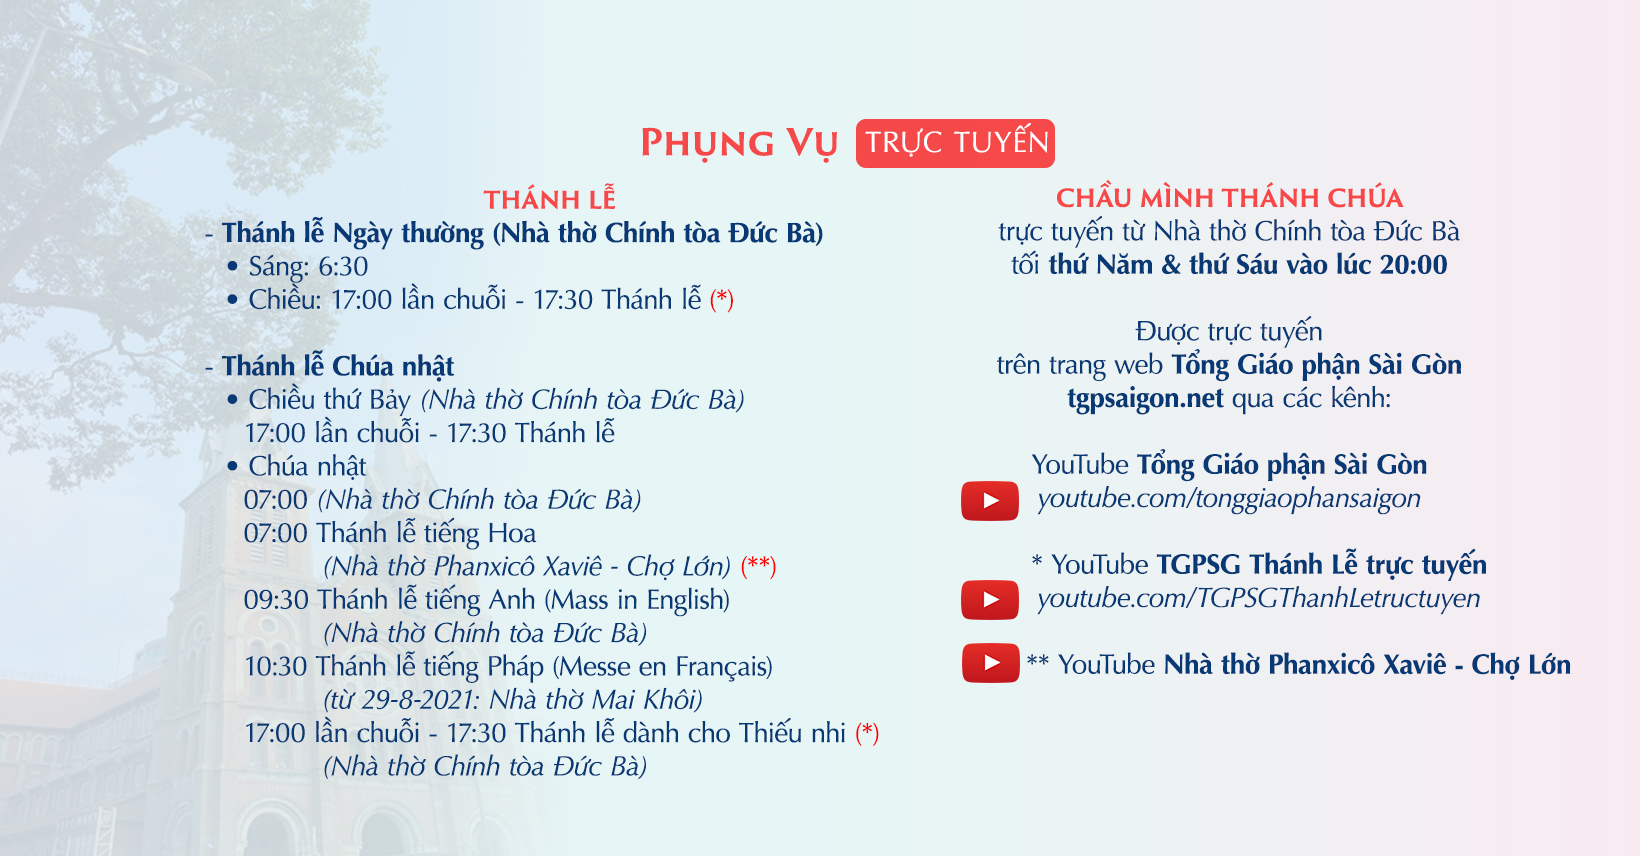 Tổng Giáo phận Sài Gòn: Phụng vụ trực tuyến từ 6-9-2021 đến 11-9-2021